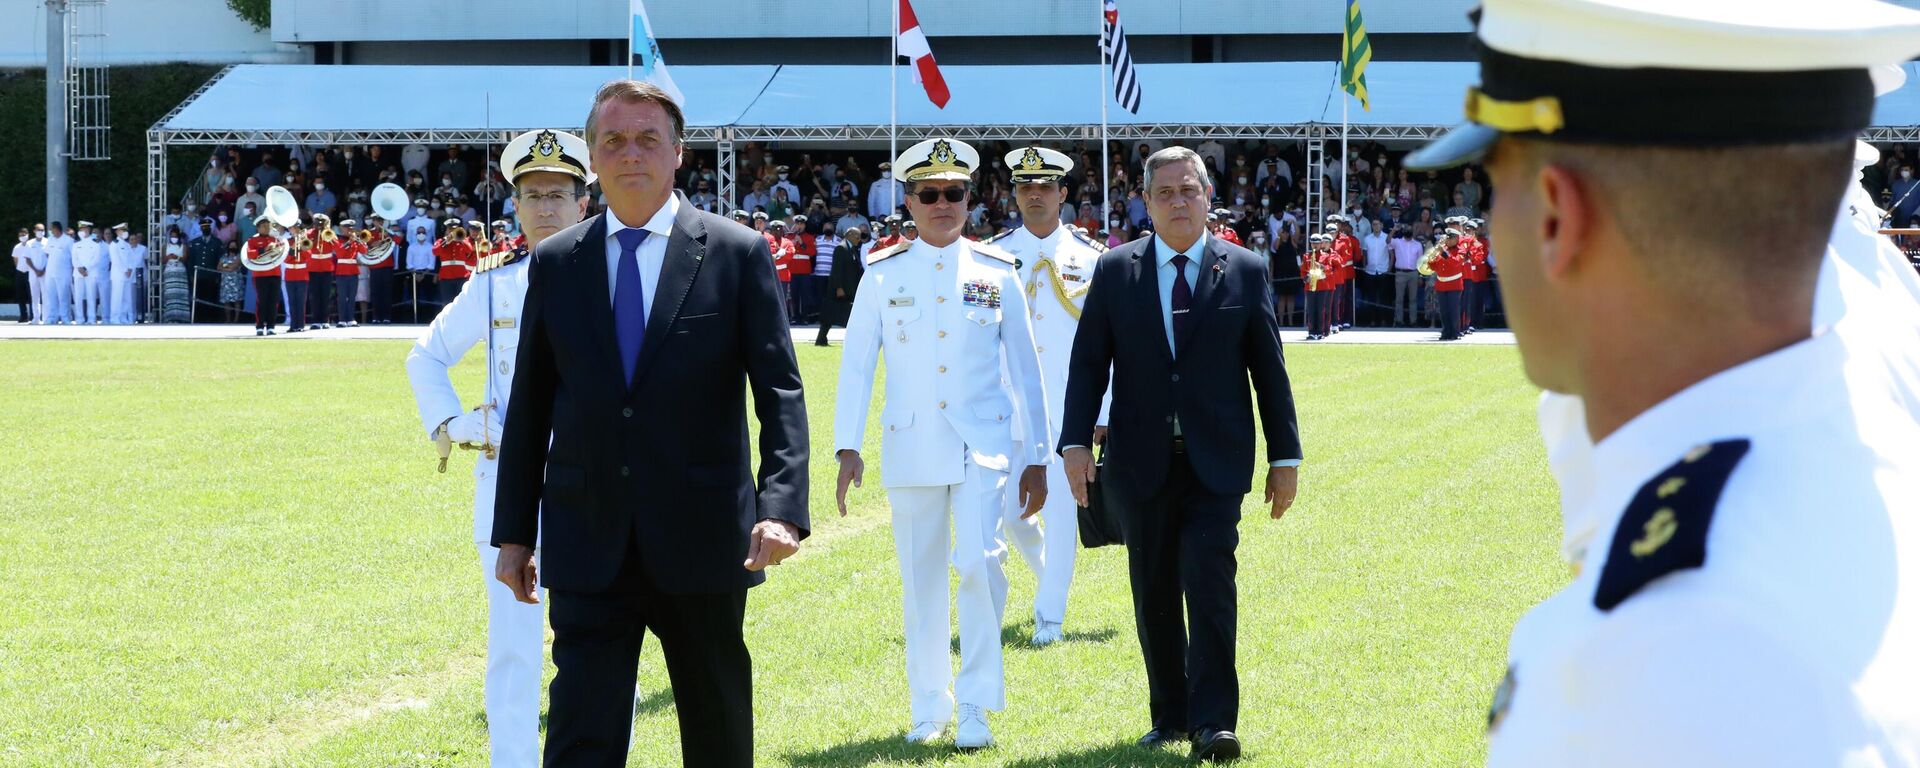 O presidente Jair Bolsonaro (à frente) na Cerimônia de Declaração de Guardas-Marinha (foto de arquivo) - Sputnik Brasil, 1920, 16.08.2022